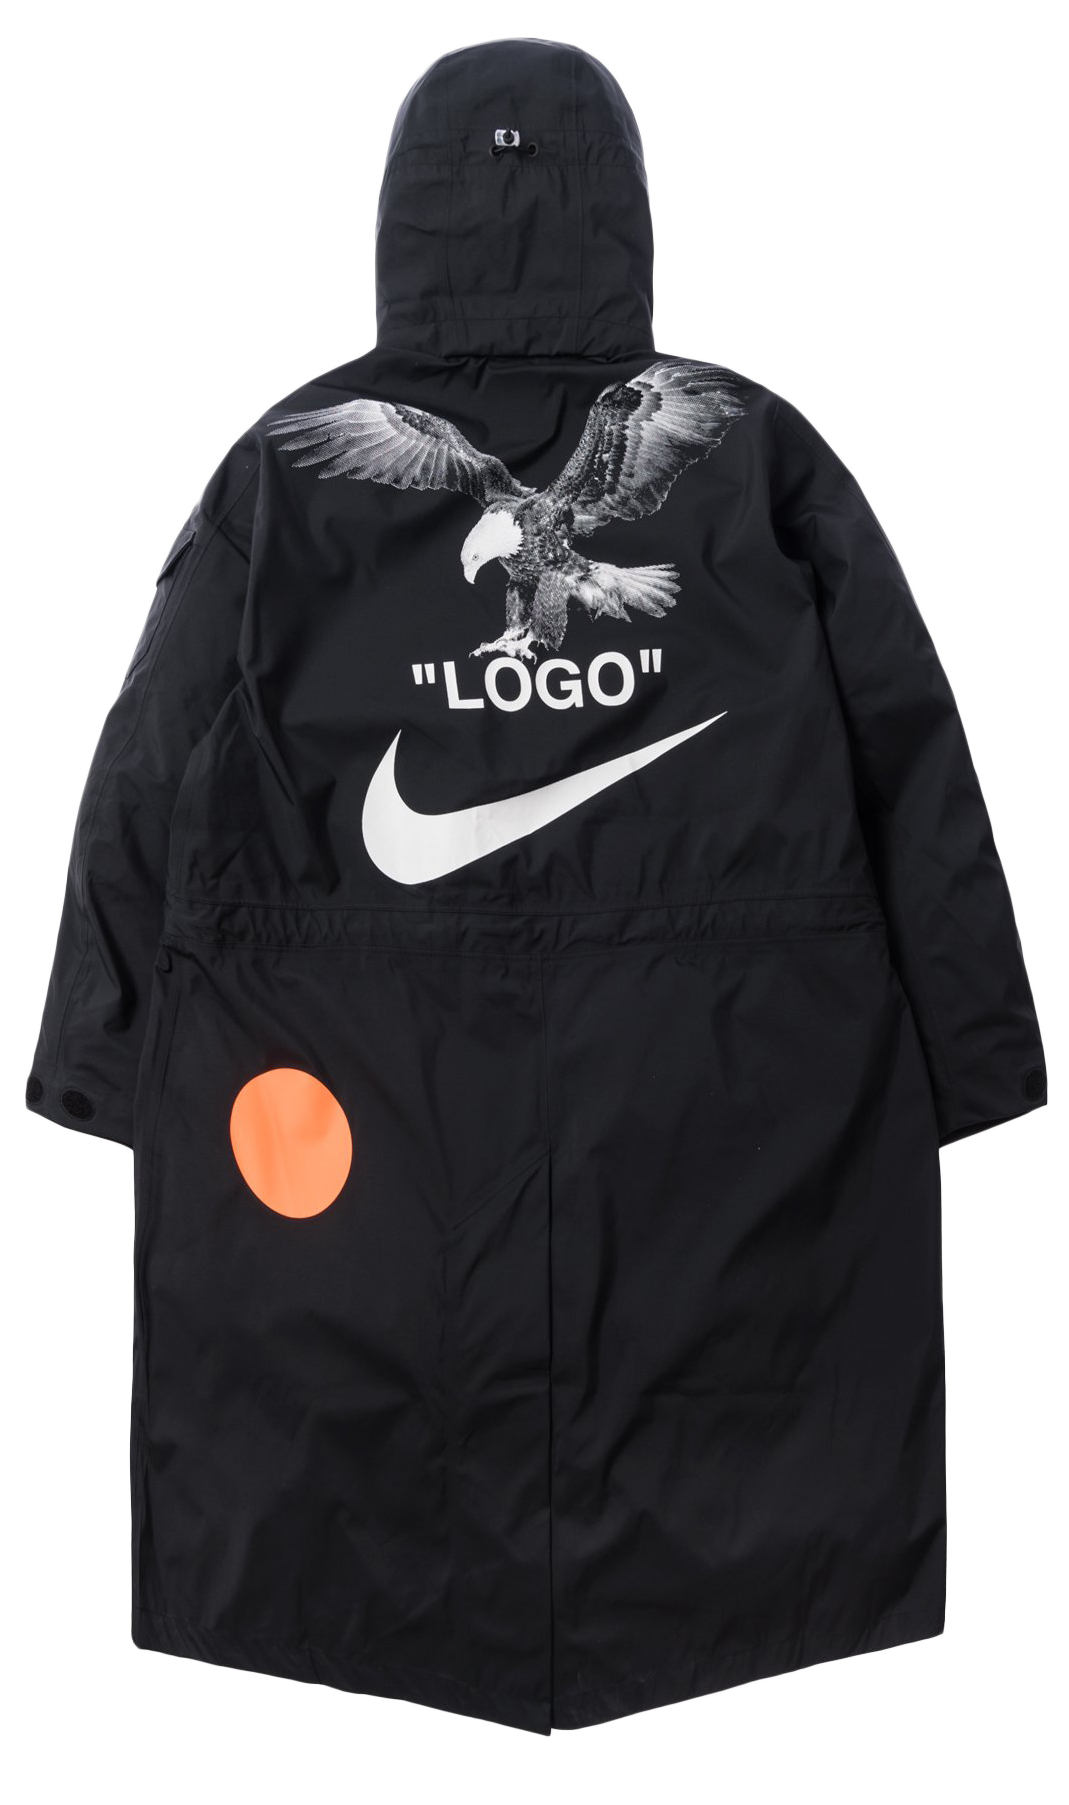 THE BEST Nike Black White Printing Logo Bomber Jacket POD Design